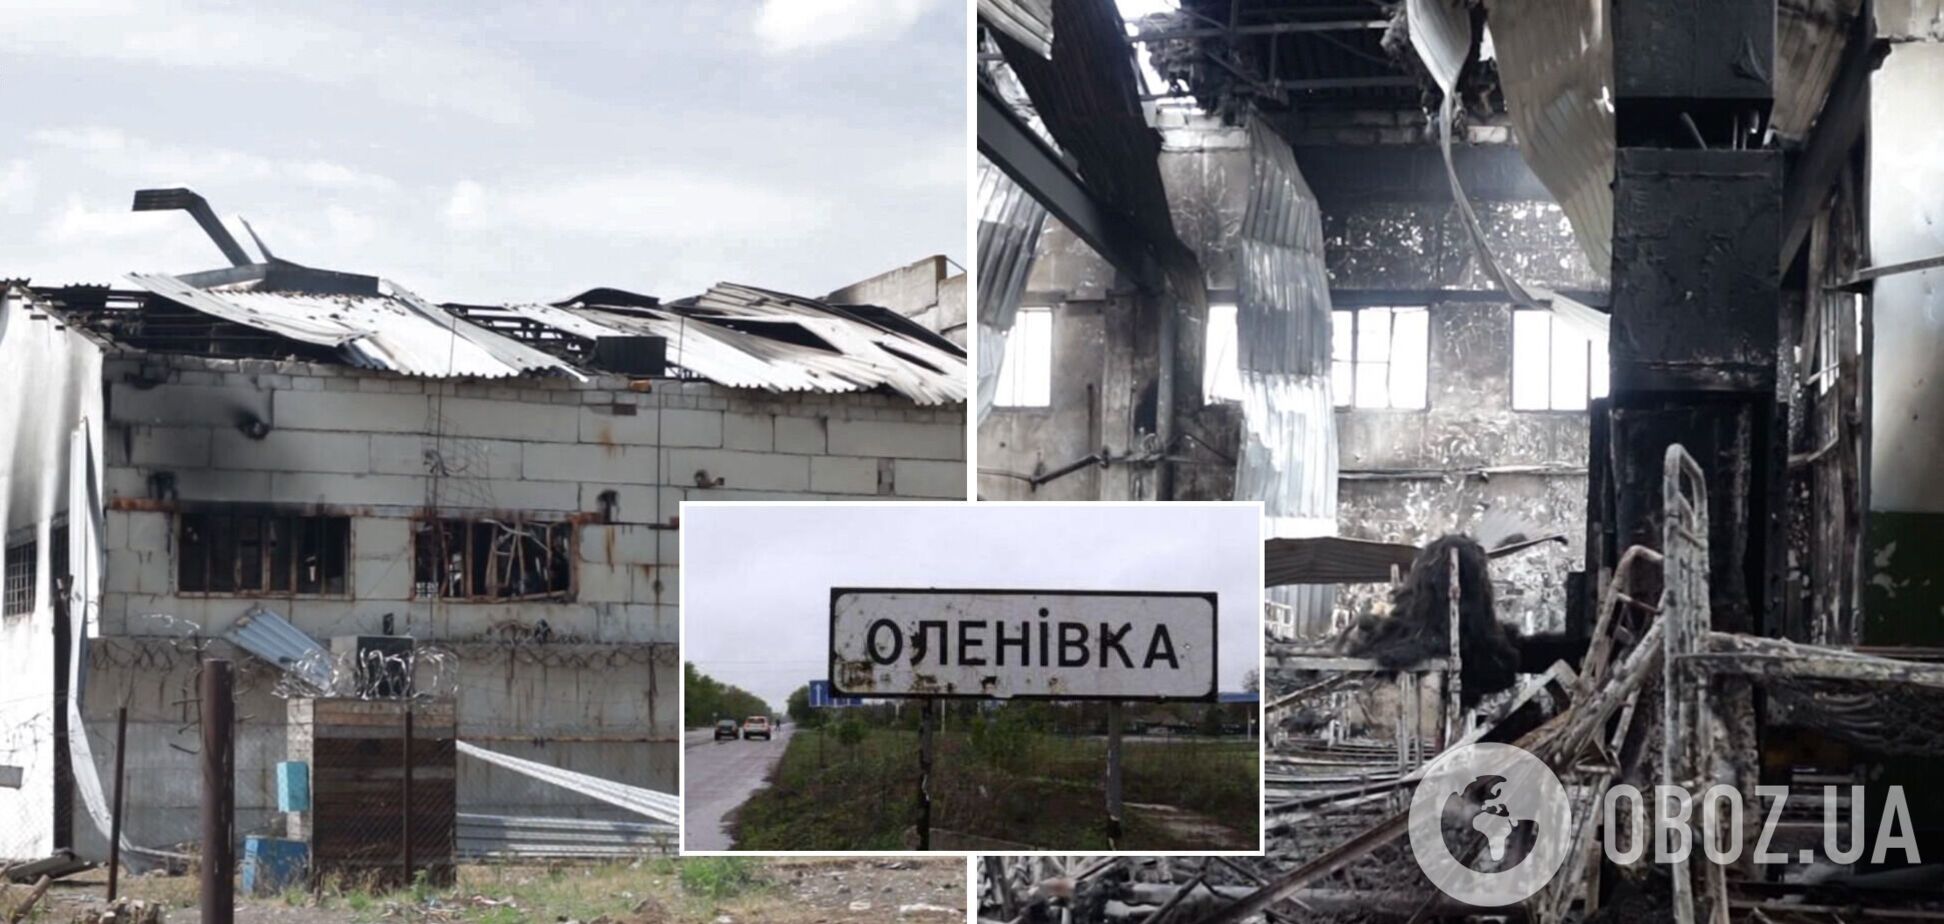 'Азовцев' просто сожгли заживо: экс-сотрудник СБУ назвал цели российского теракта в колонии в Еленовке